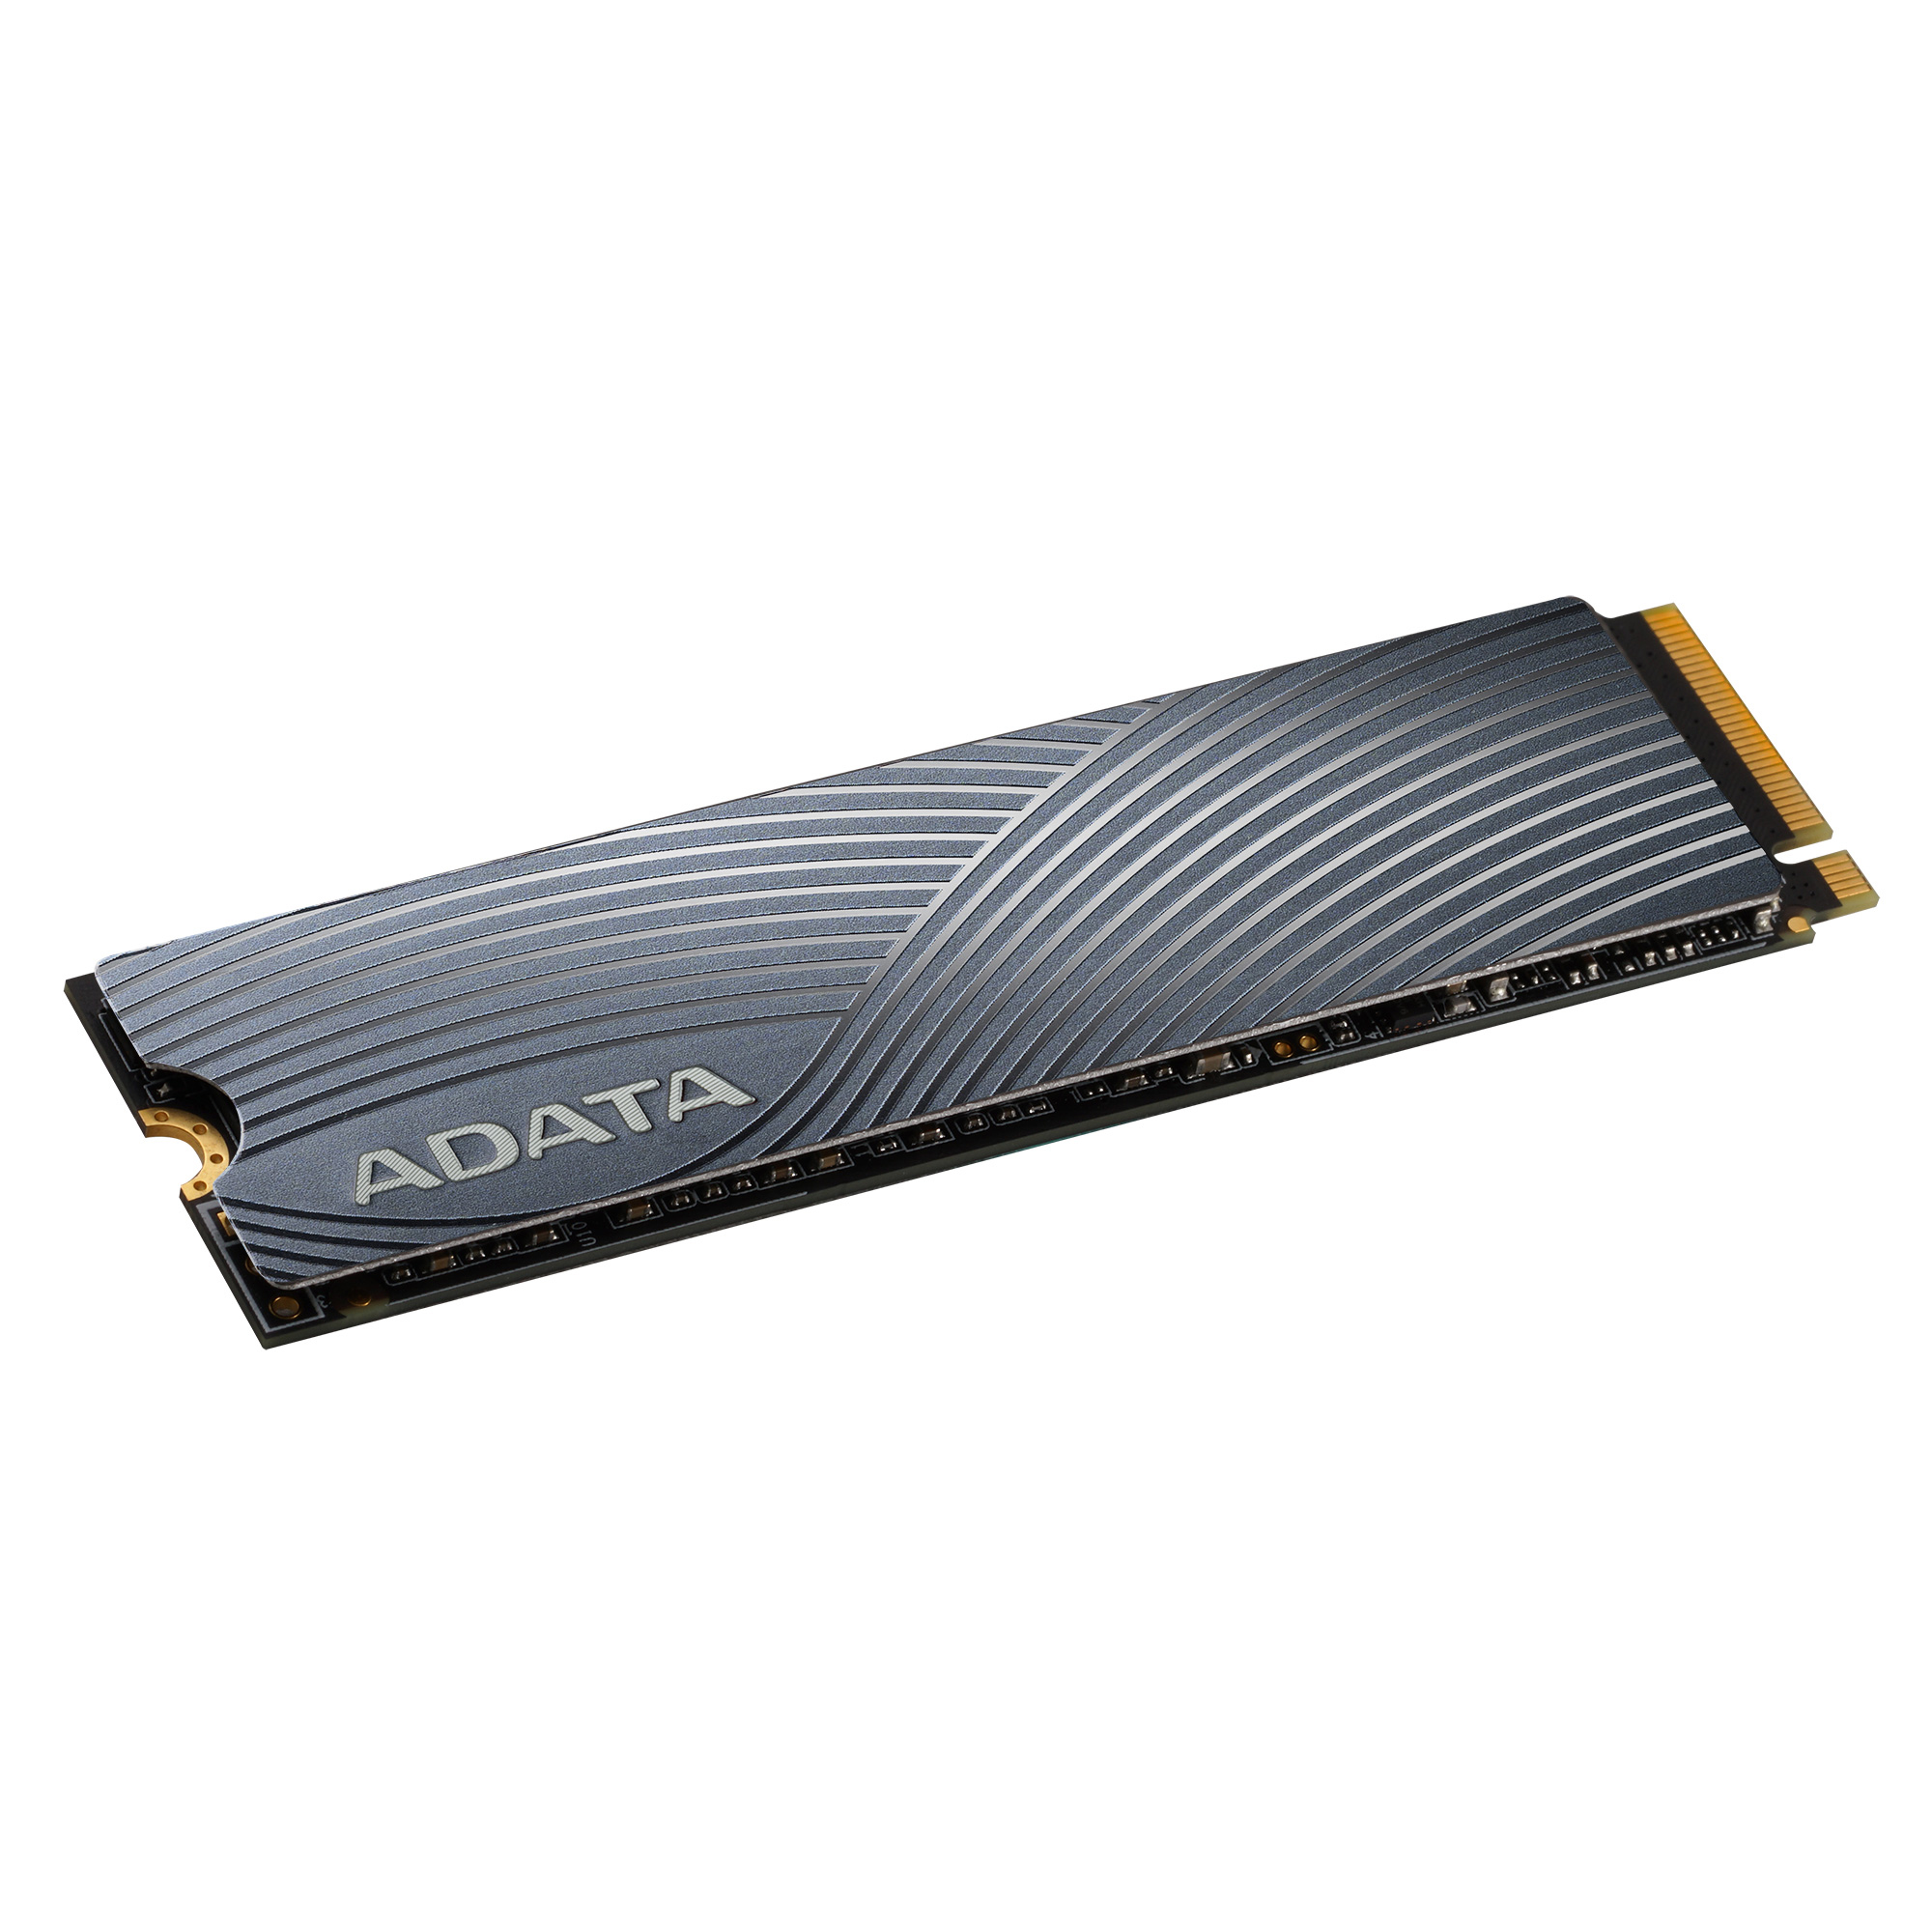 0円 セール特別価格 ADATA SSD 500GB ソードフィッシュ M.2 Type2280 PCIe3×4 NVMe 3D NAND Flash採用 最大読